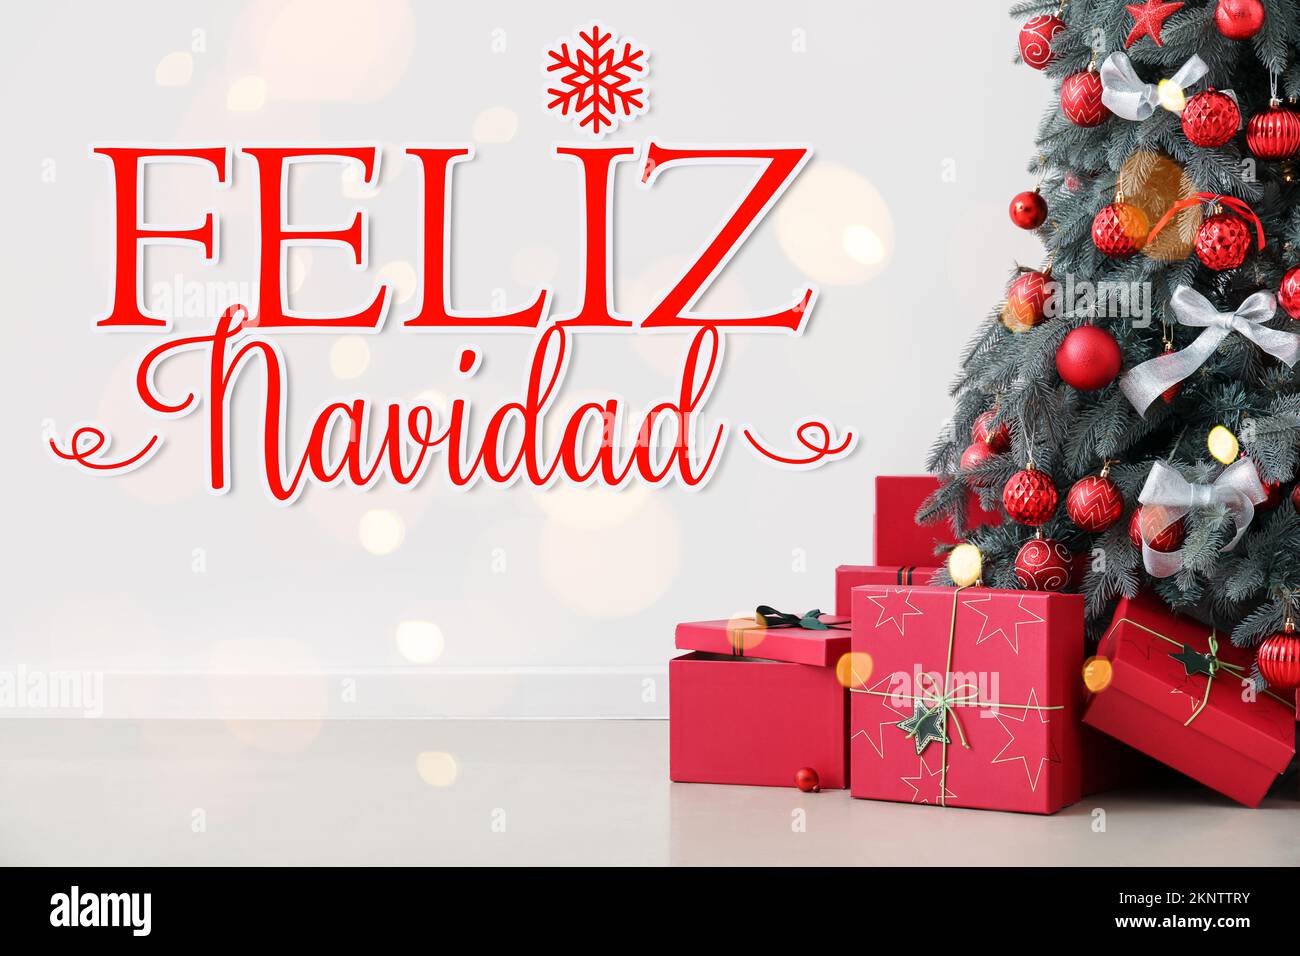 Grußkarte mit dekoriertem Tannenbaum, Geschenken und Text FELIZ NAVIDAD (Spanisch für fröhliche Weihnachten) Stockfoto